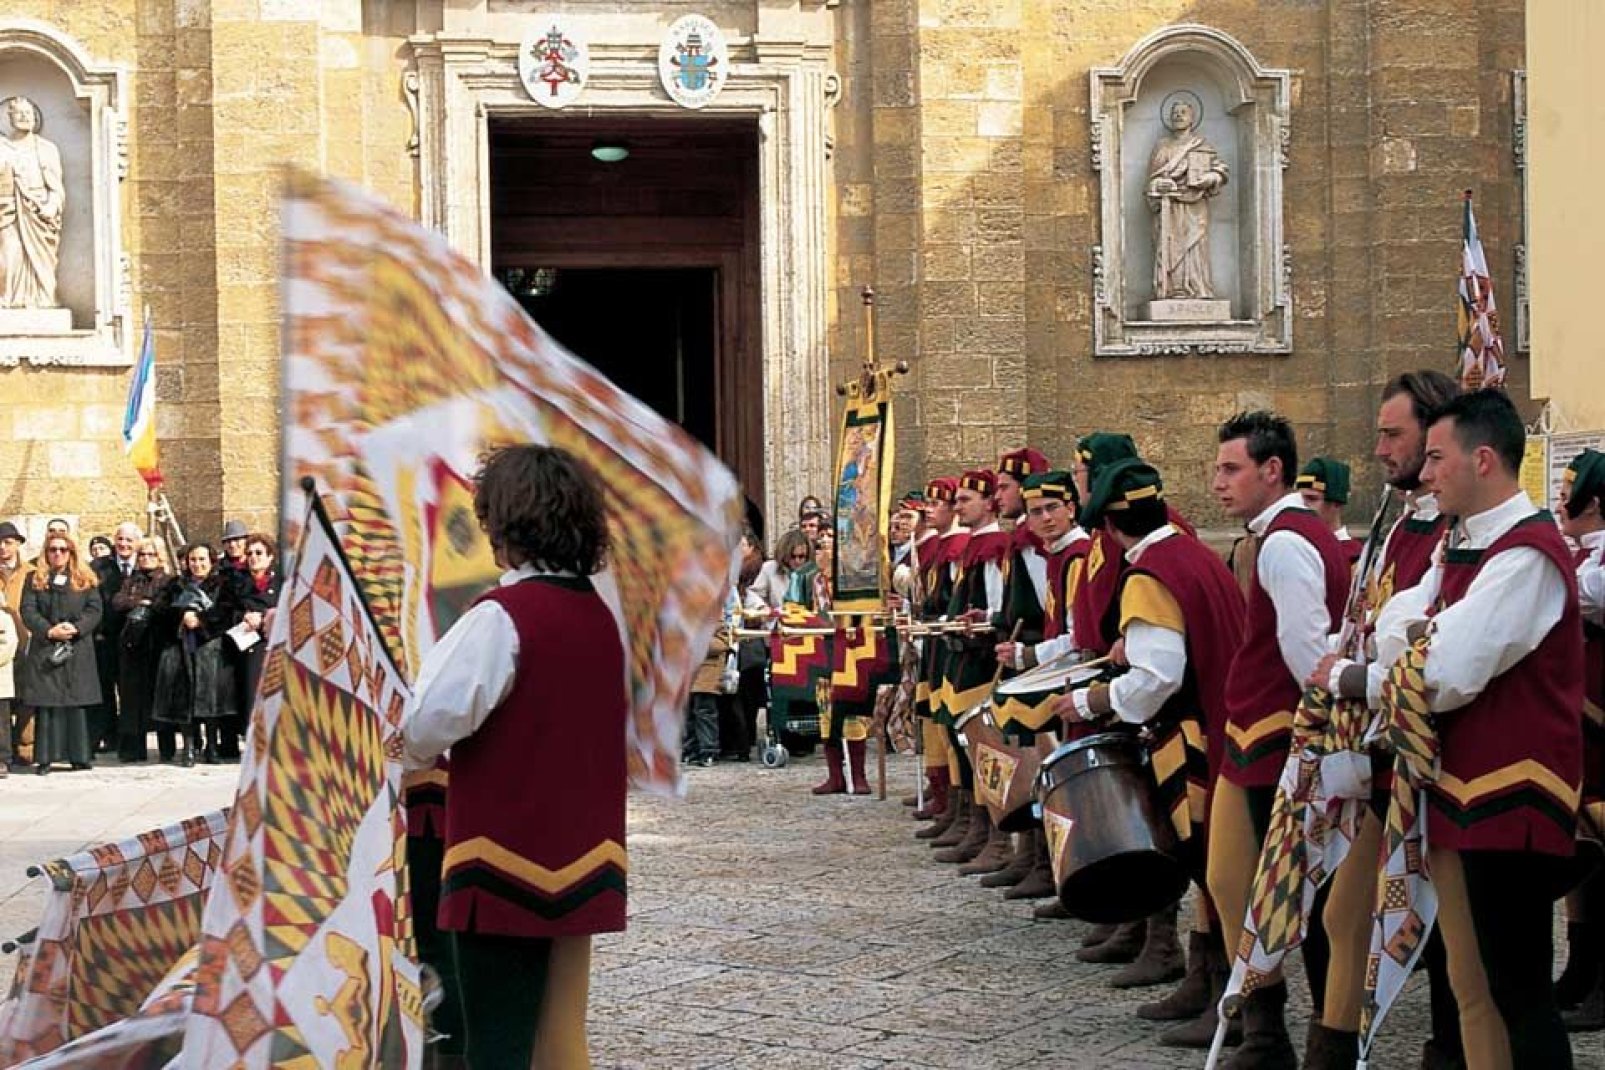 A Brindisi ancora oggi le tradizioni e il folklore locale hanno una grande risonanza. Ad esempio, qui si pratica ancora il culto del Tarantismo